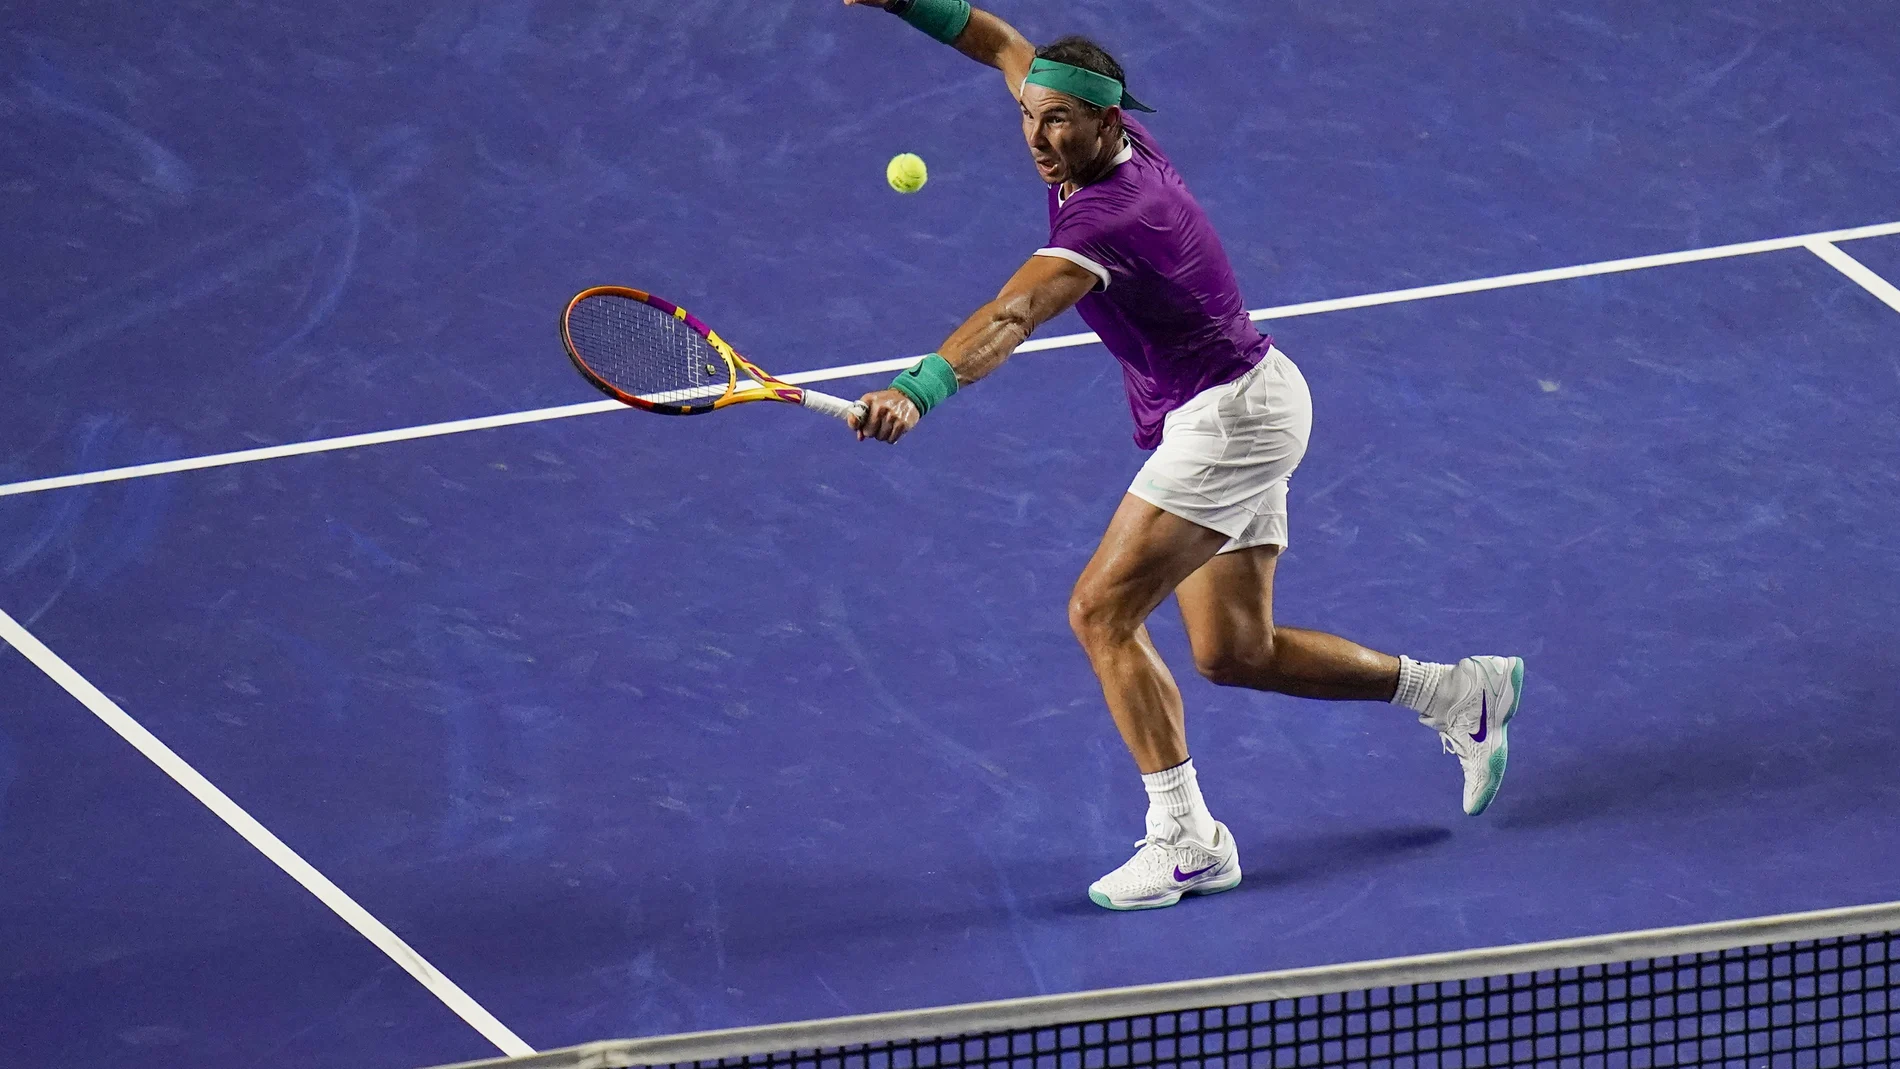 Nadal volea durante su partido de semifinales de Acapulco ante Medvedev